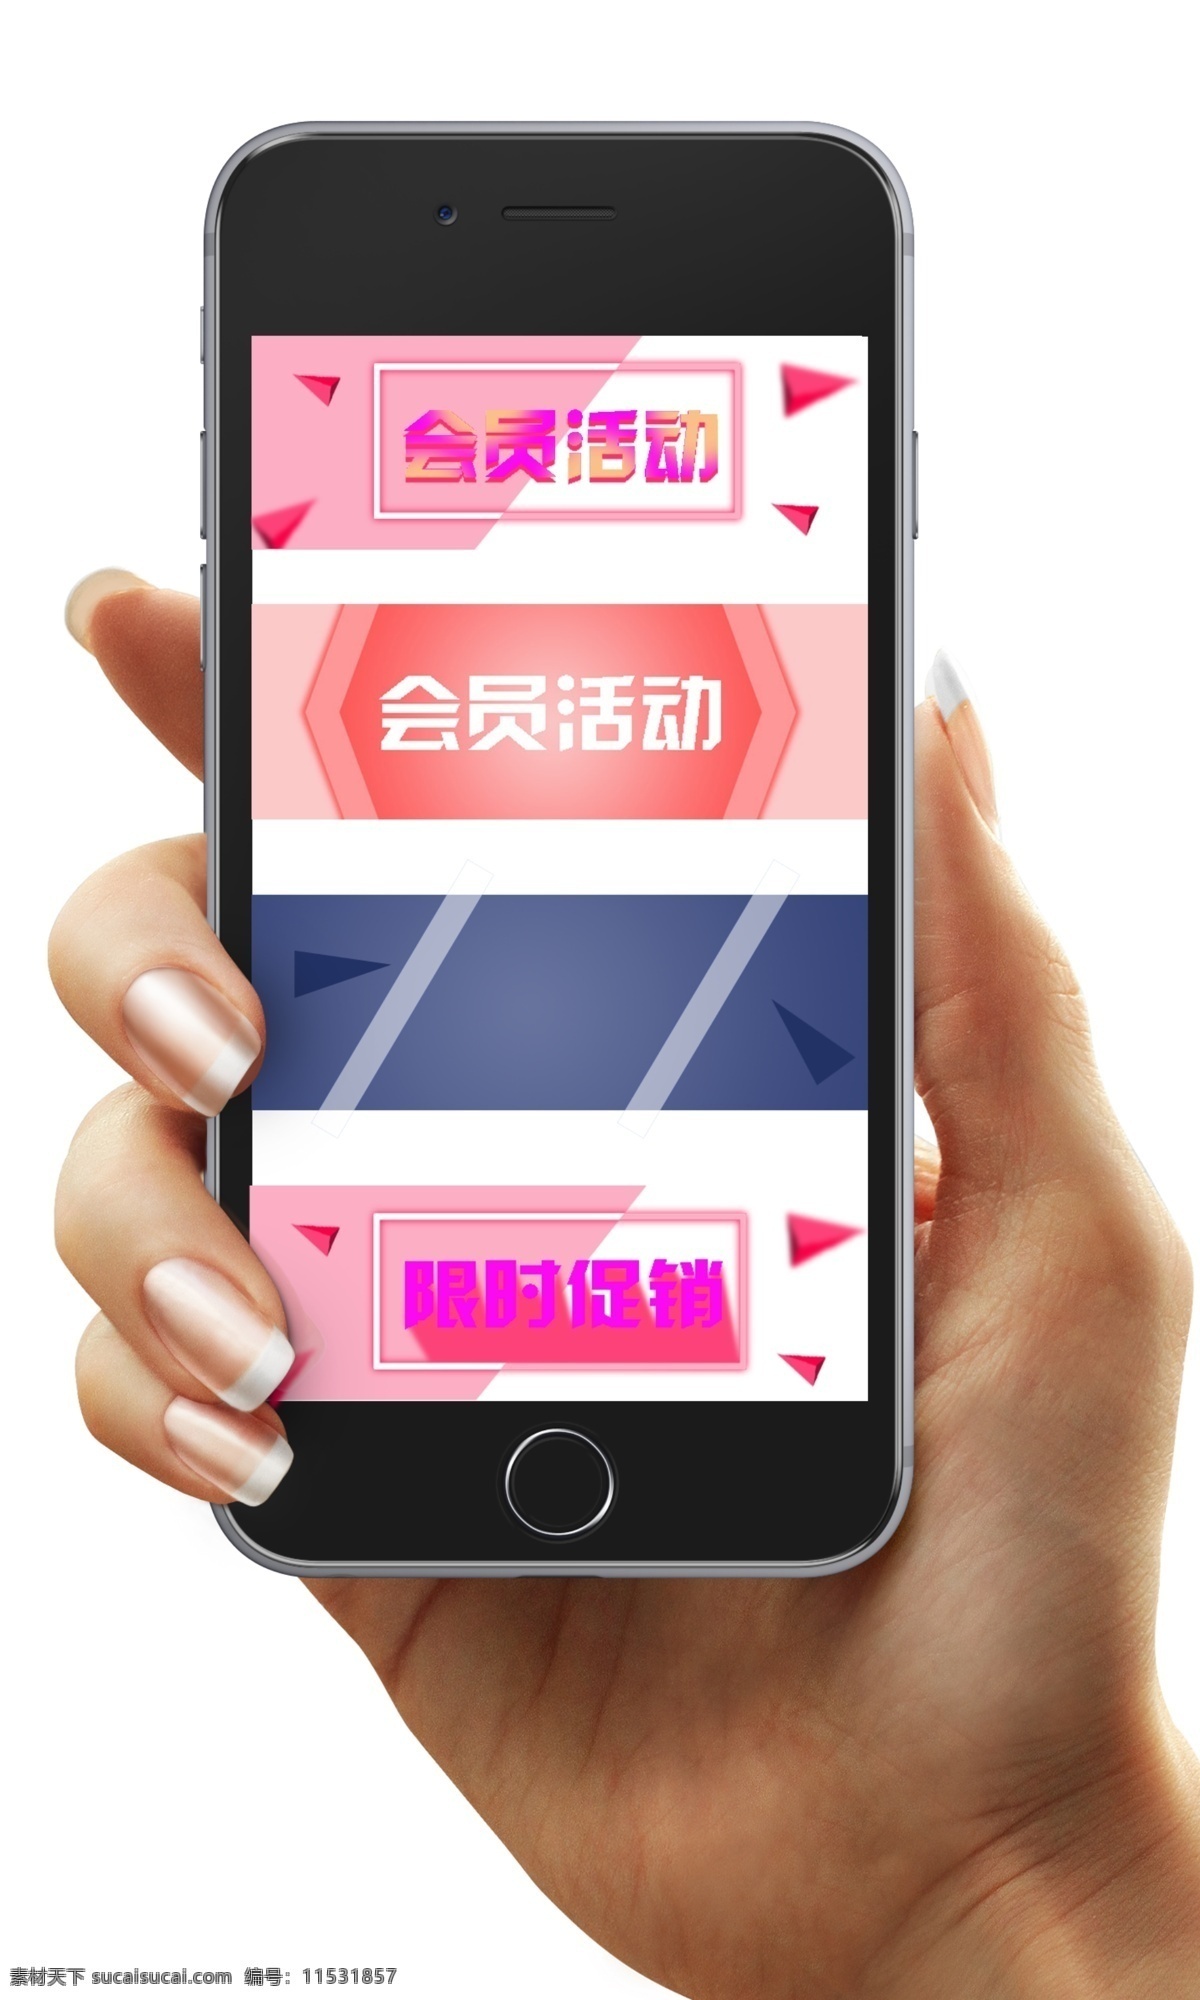 手机淘宝背景 活动 创意 手机 背景 粉色 白色 温馨舒适 psd图层 可更改